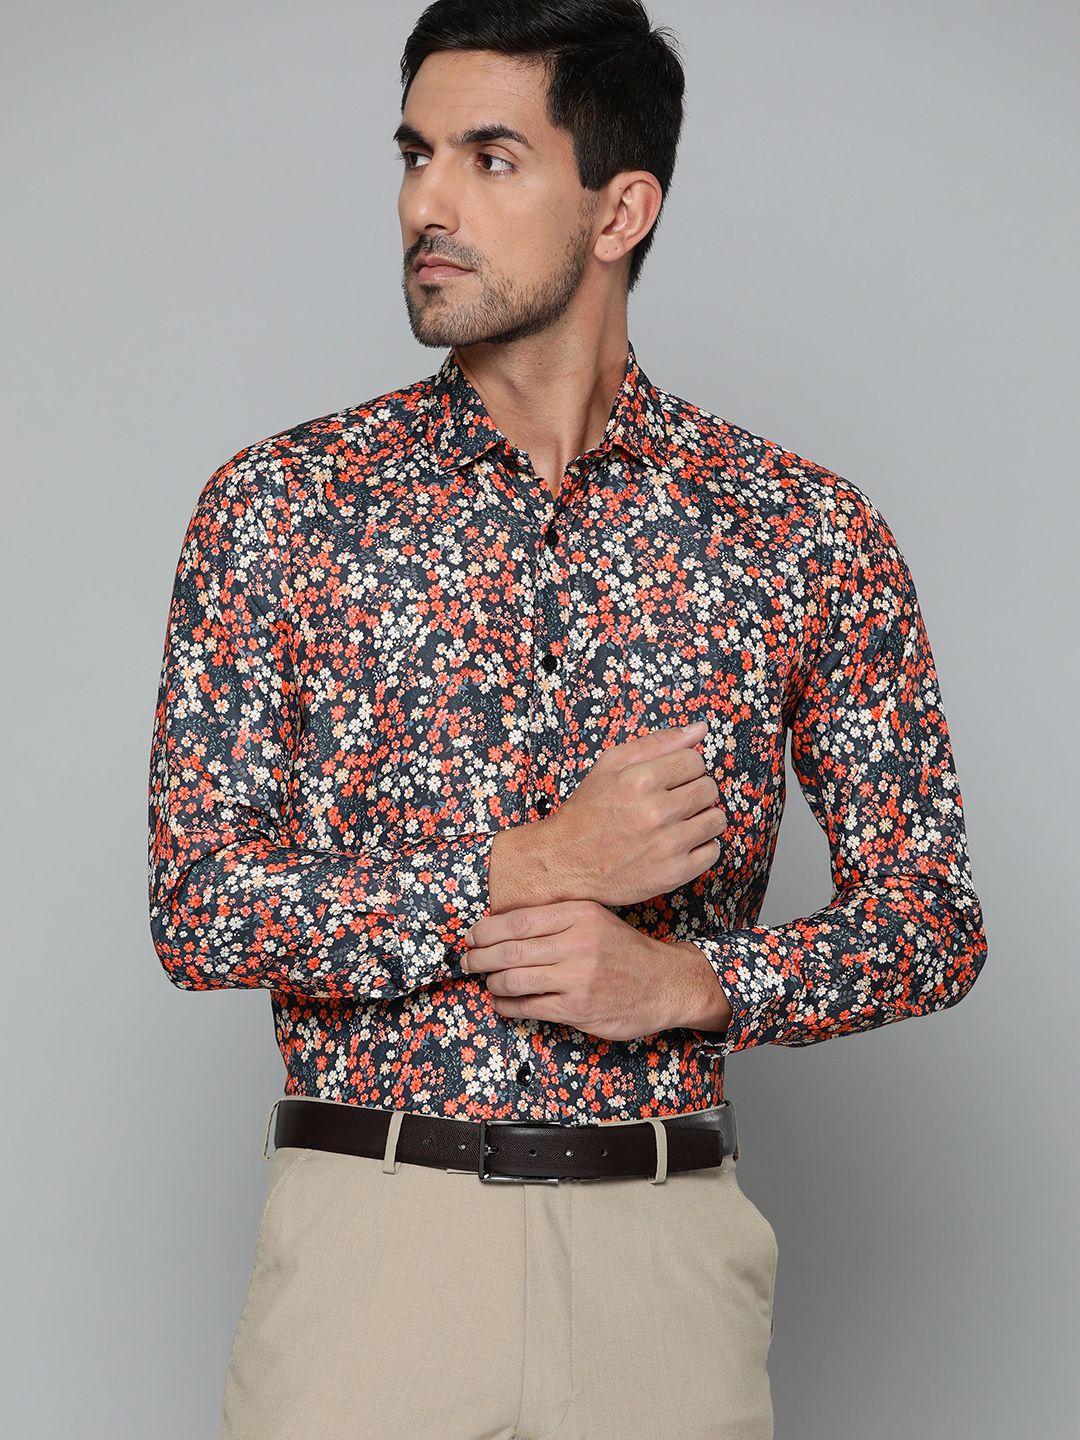 dennison men navy blue smart slim fit floral printed formal shirt